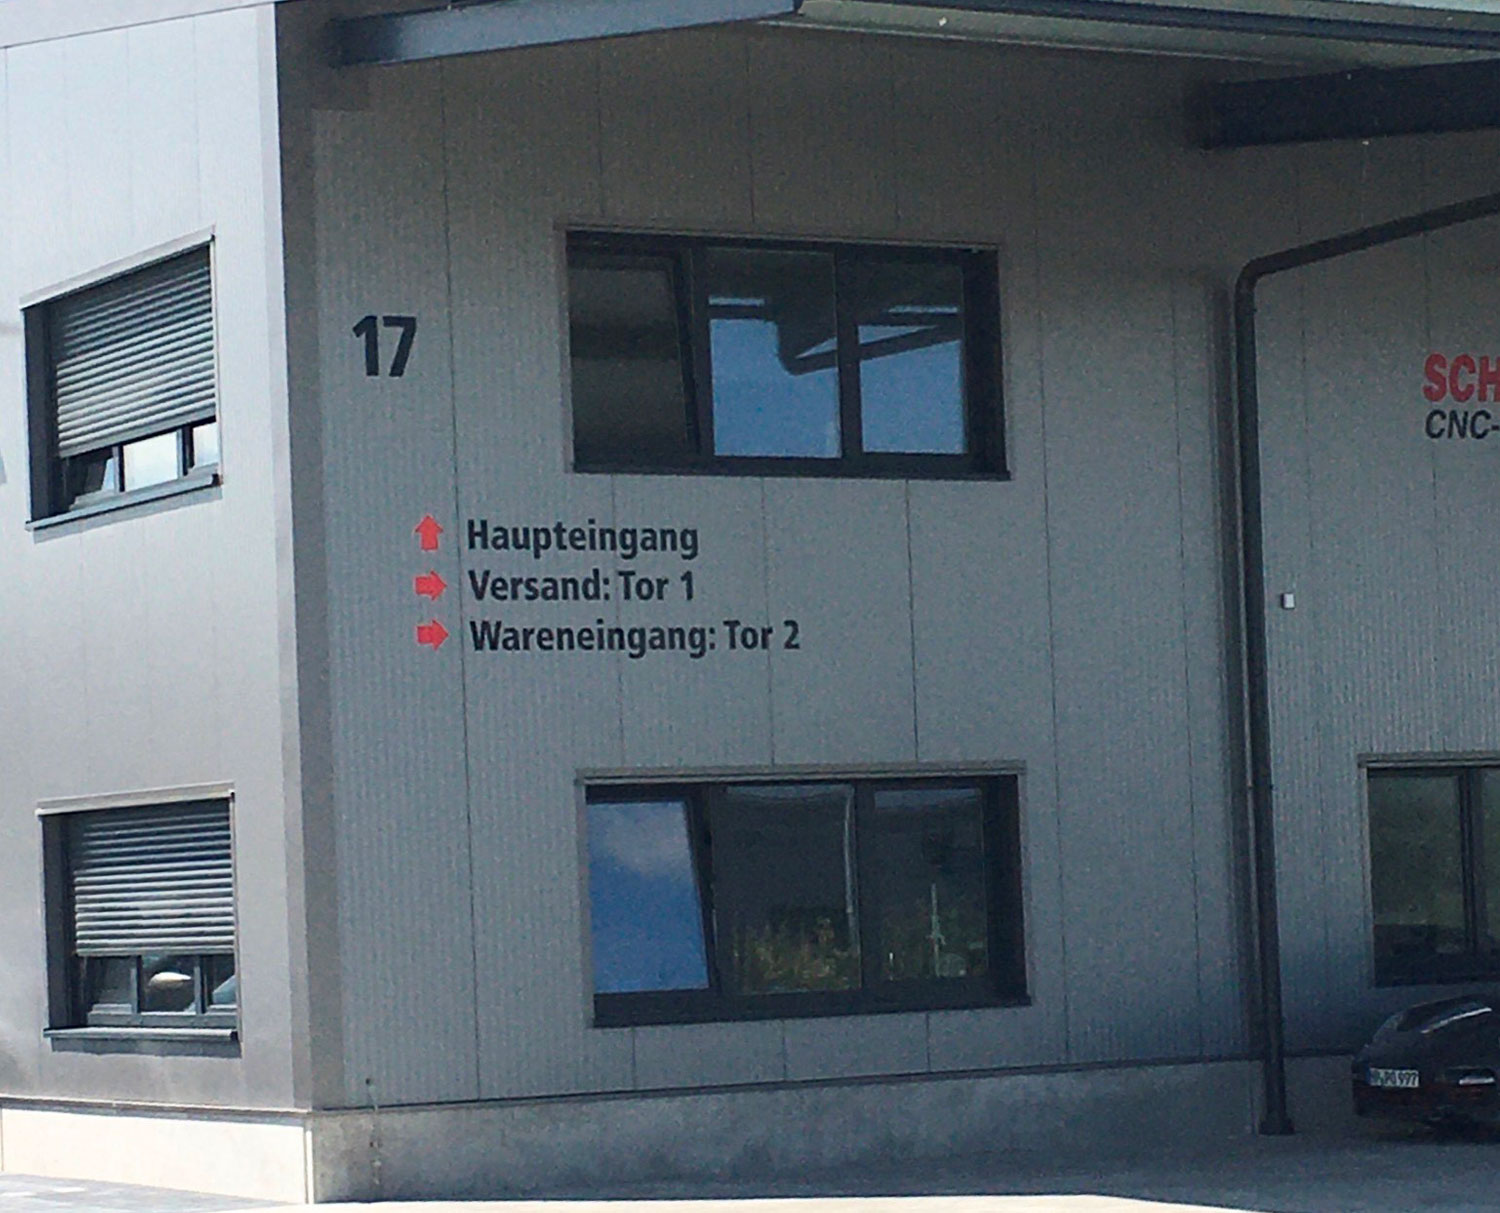 Haupteingang der Firma Schnabel CNC-Fertigung GmbH mit Wegweiser zu den verschiedenen Werksbereichen